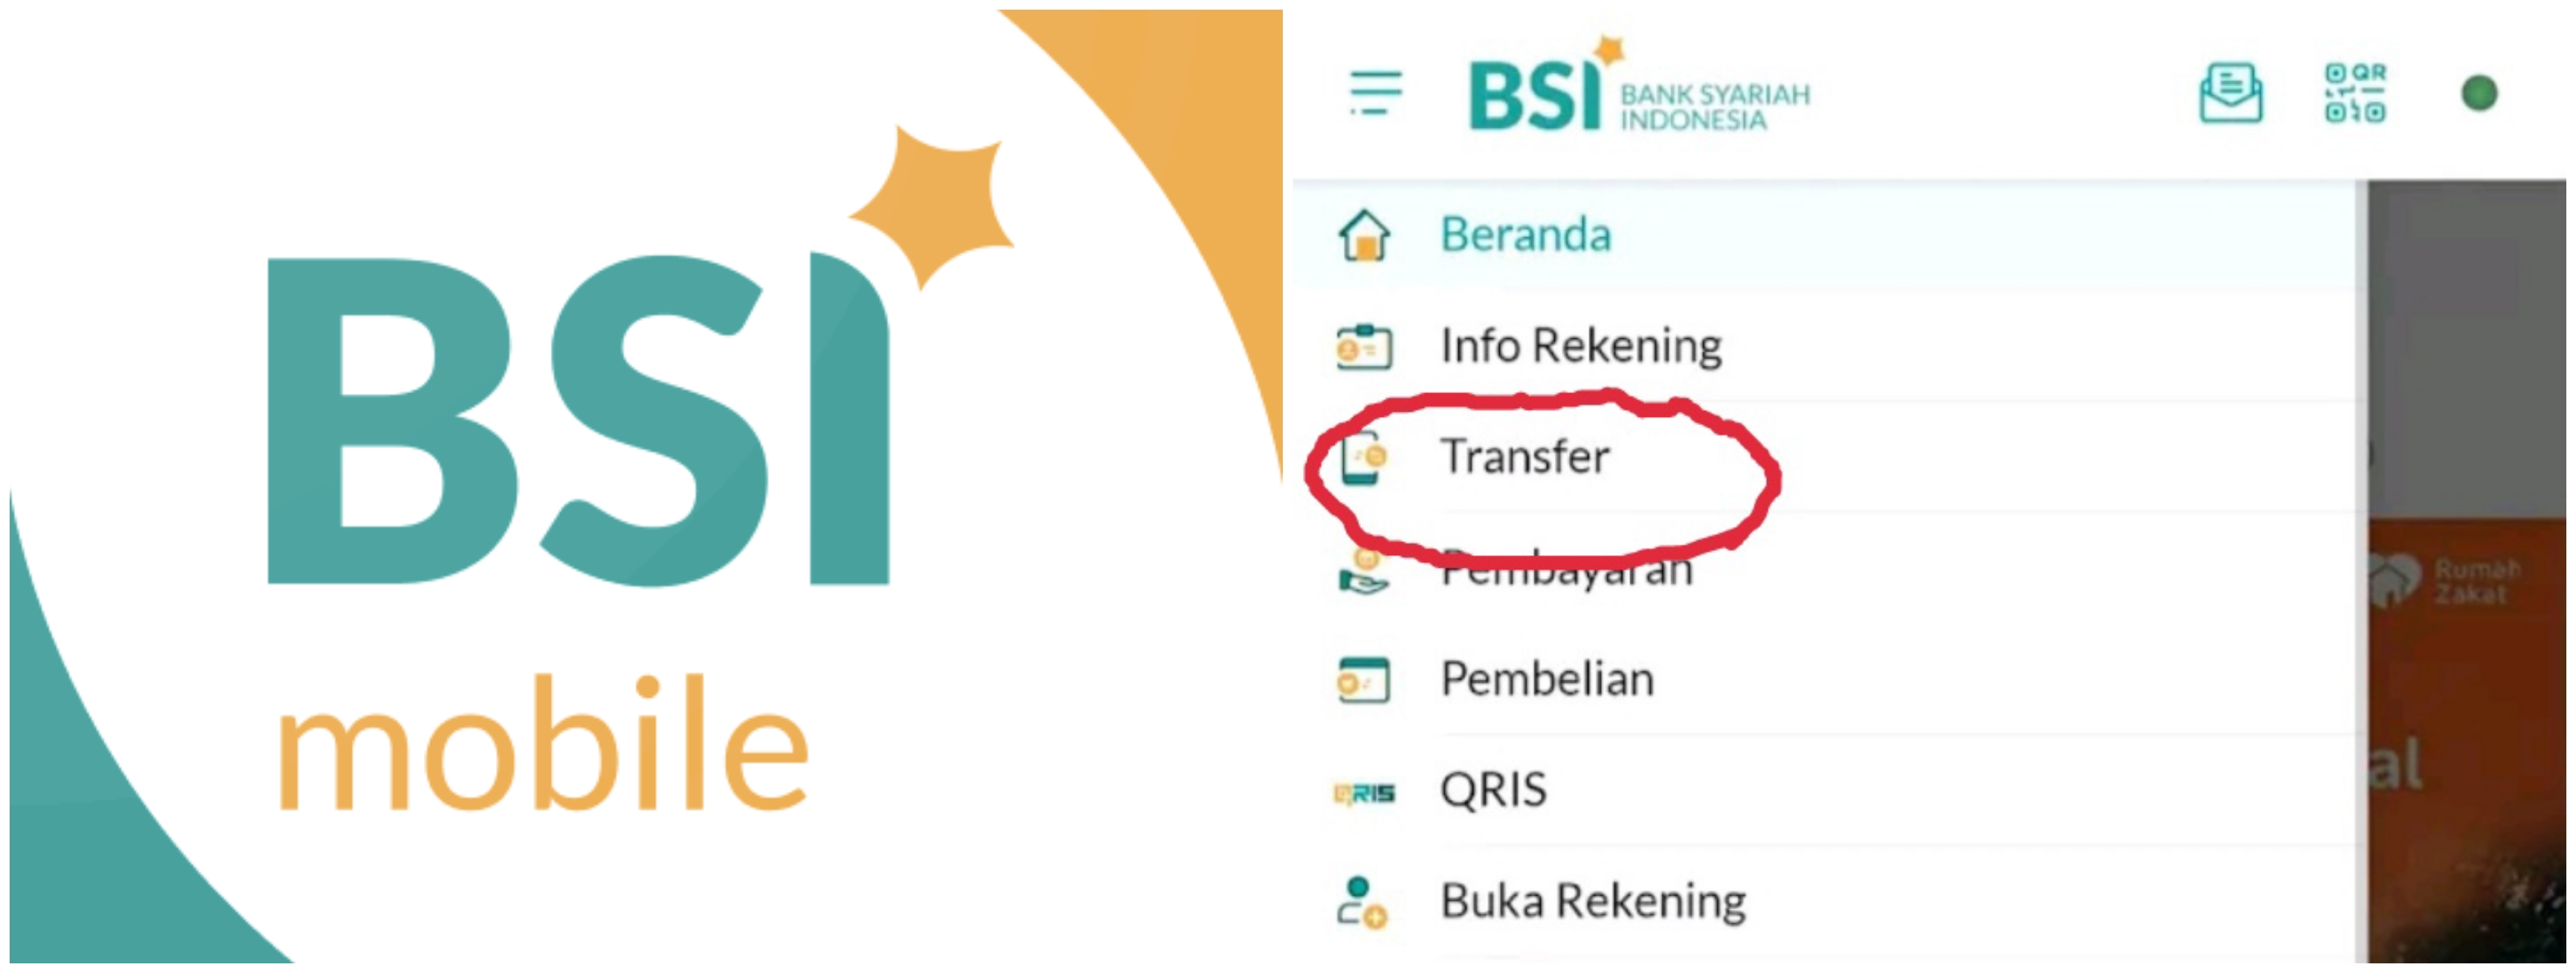 7 Cara transfer uang lewat BSI mobile banking, mudahkan transaksi